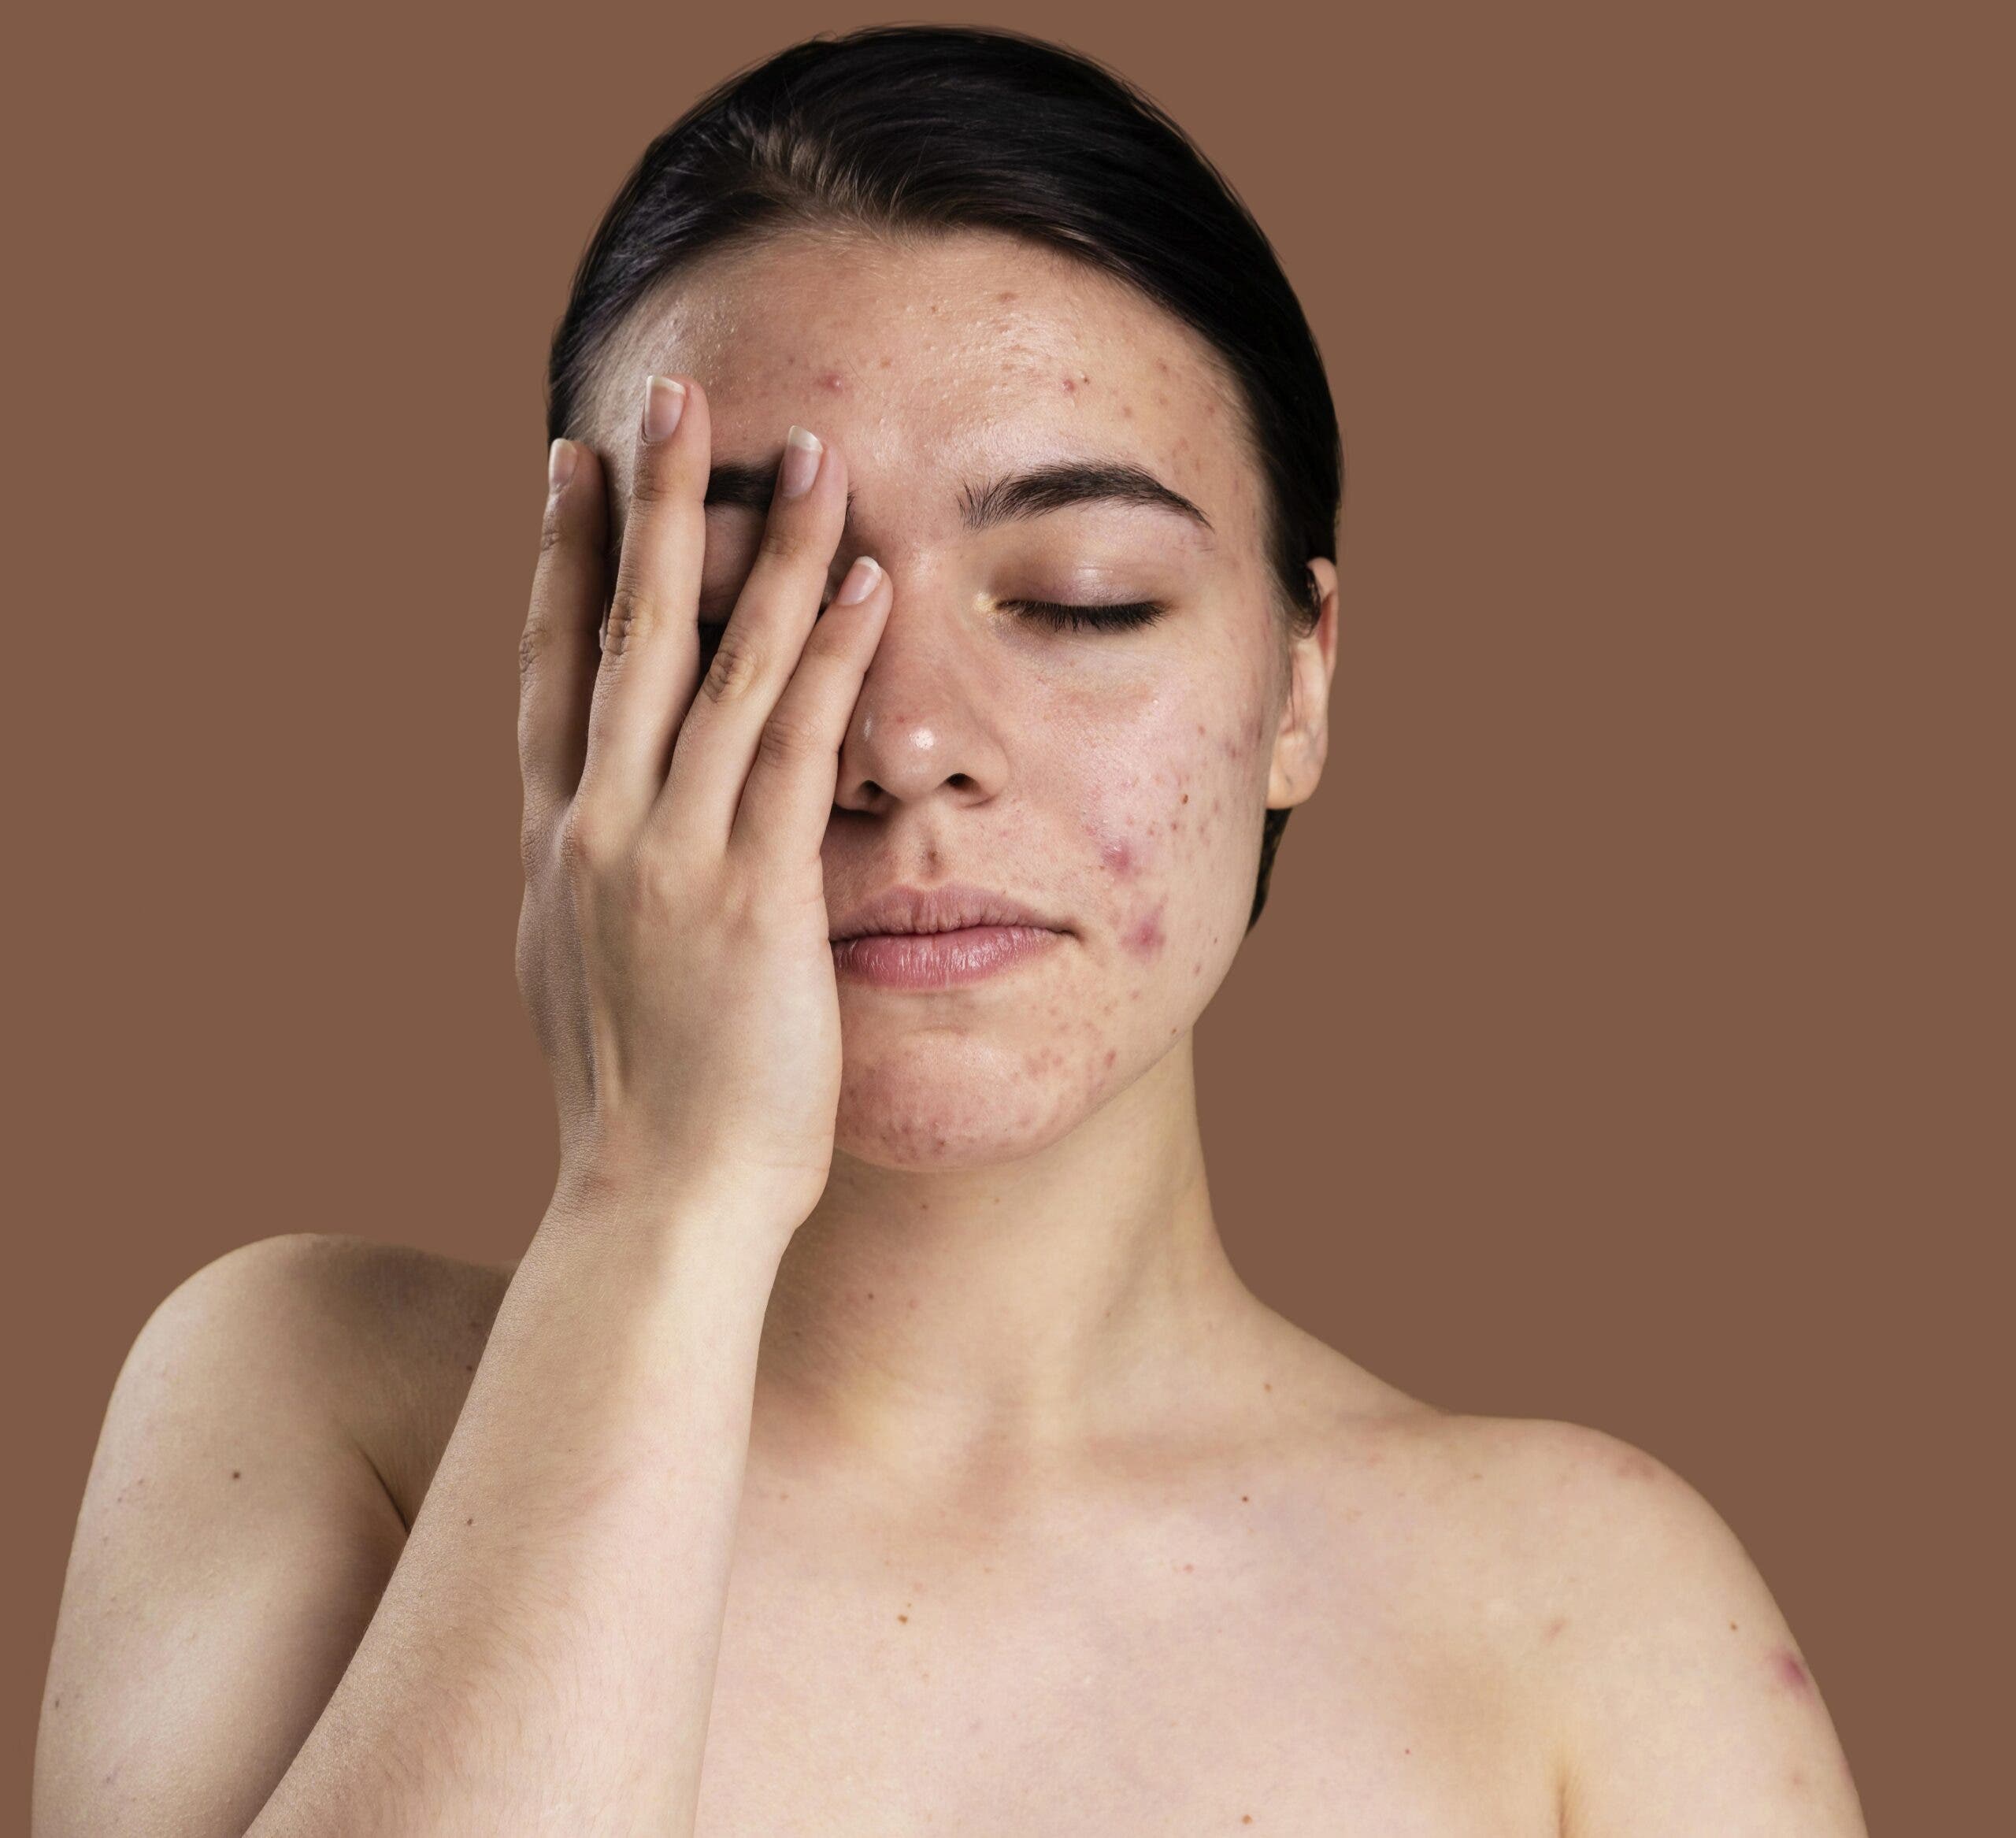 El acné afecta la piel y emociones de las personas